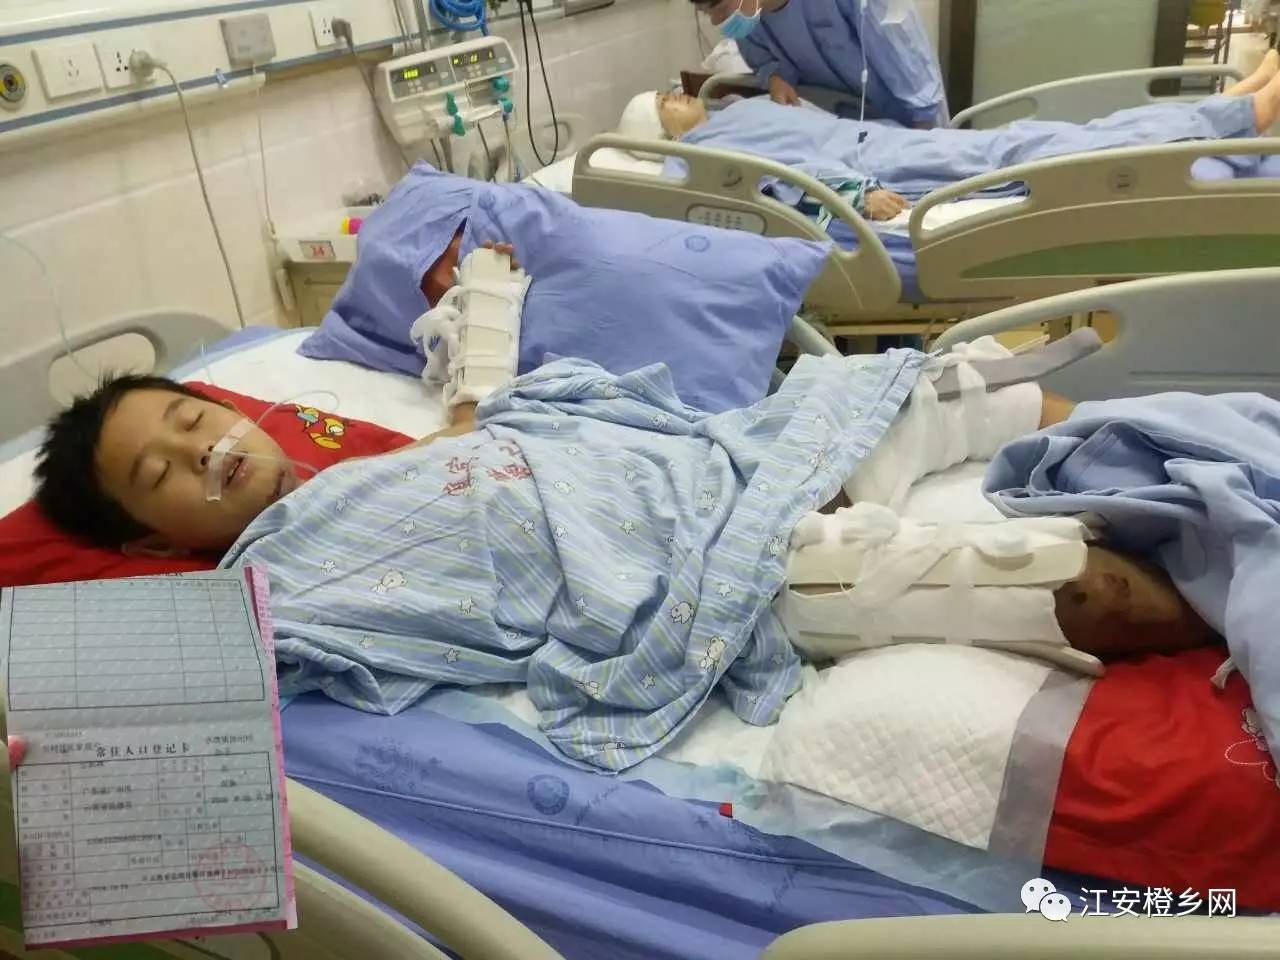 悲剧!江安11岁学生从4楼坠下摔成重伤,全身多处骨折,父母哭惨了